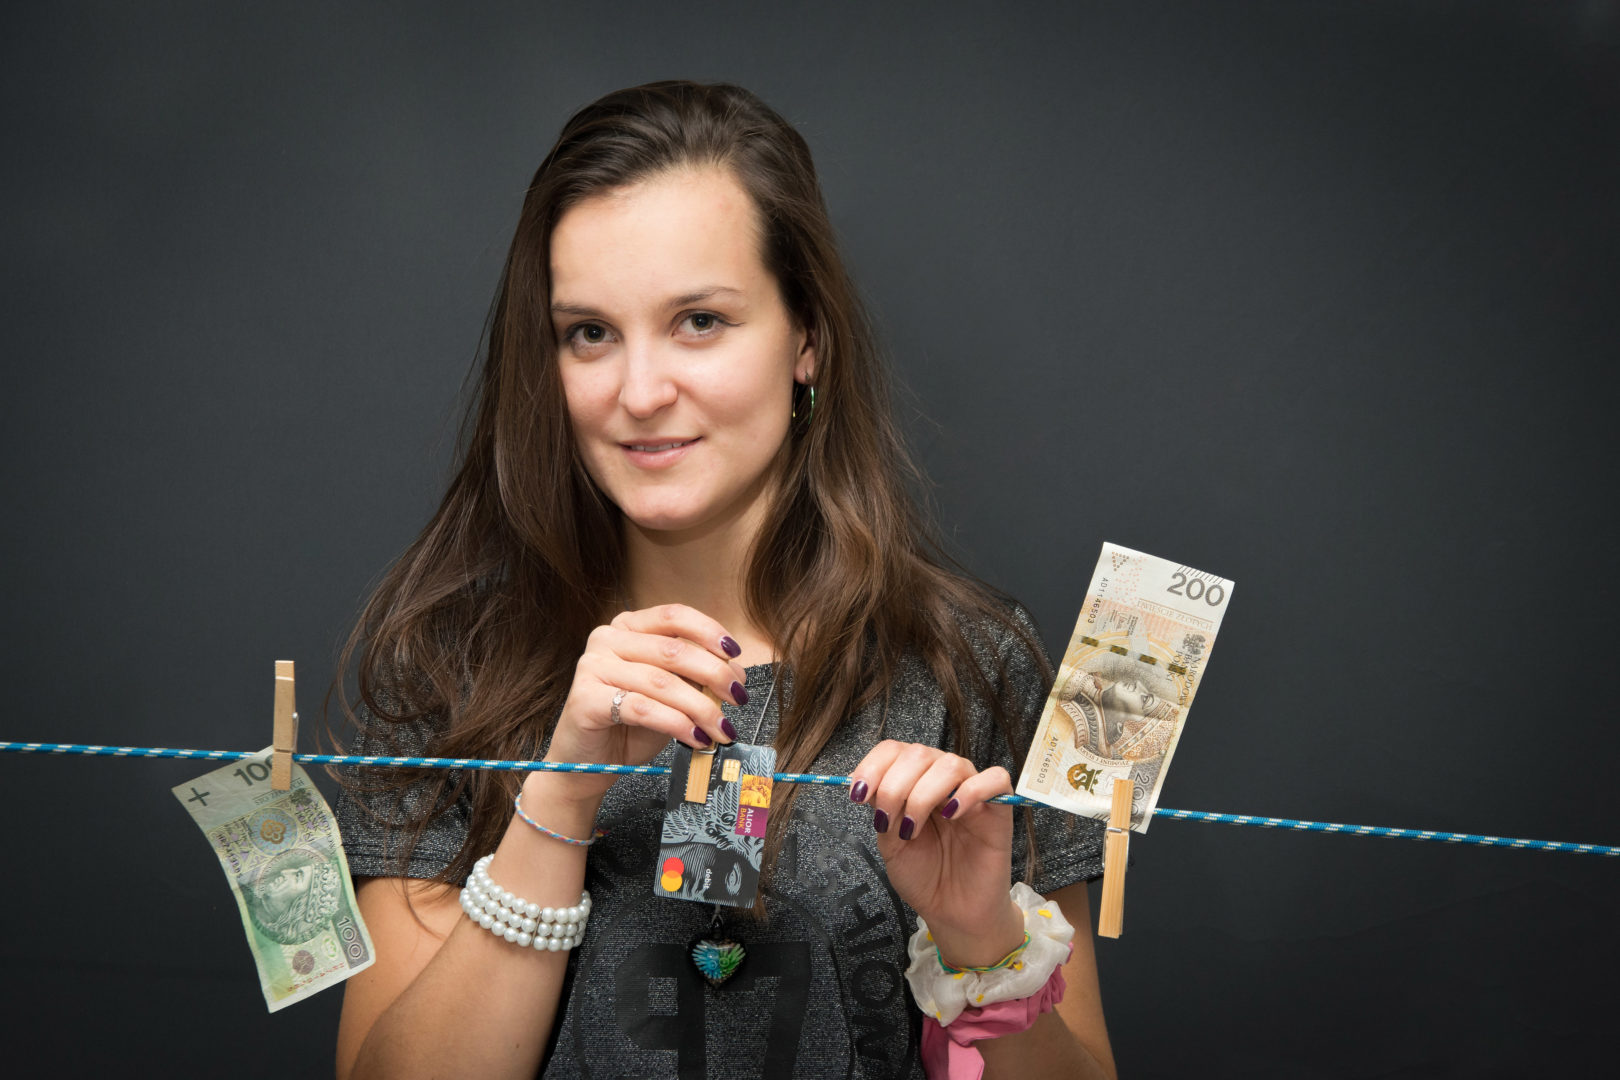 Na zdjęciu kobieta przypinająca na sznurku dwa banknoty w nominale 100 i 200 złotych. Kobieta widoczna jest od klatki piersiowej w górę, z tyłu ciemne tło.